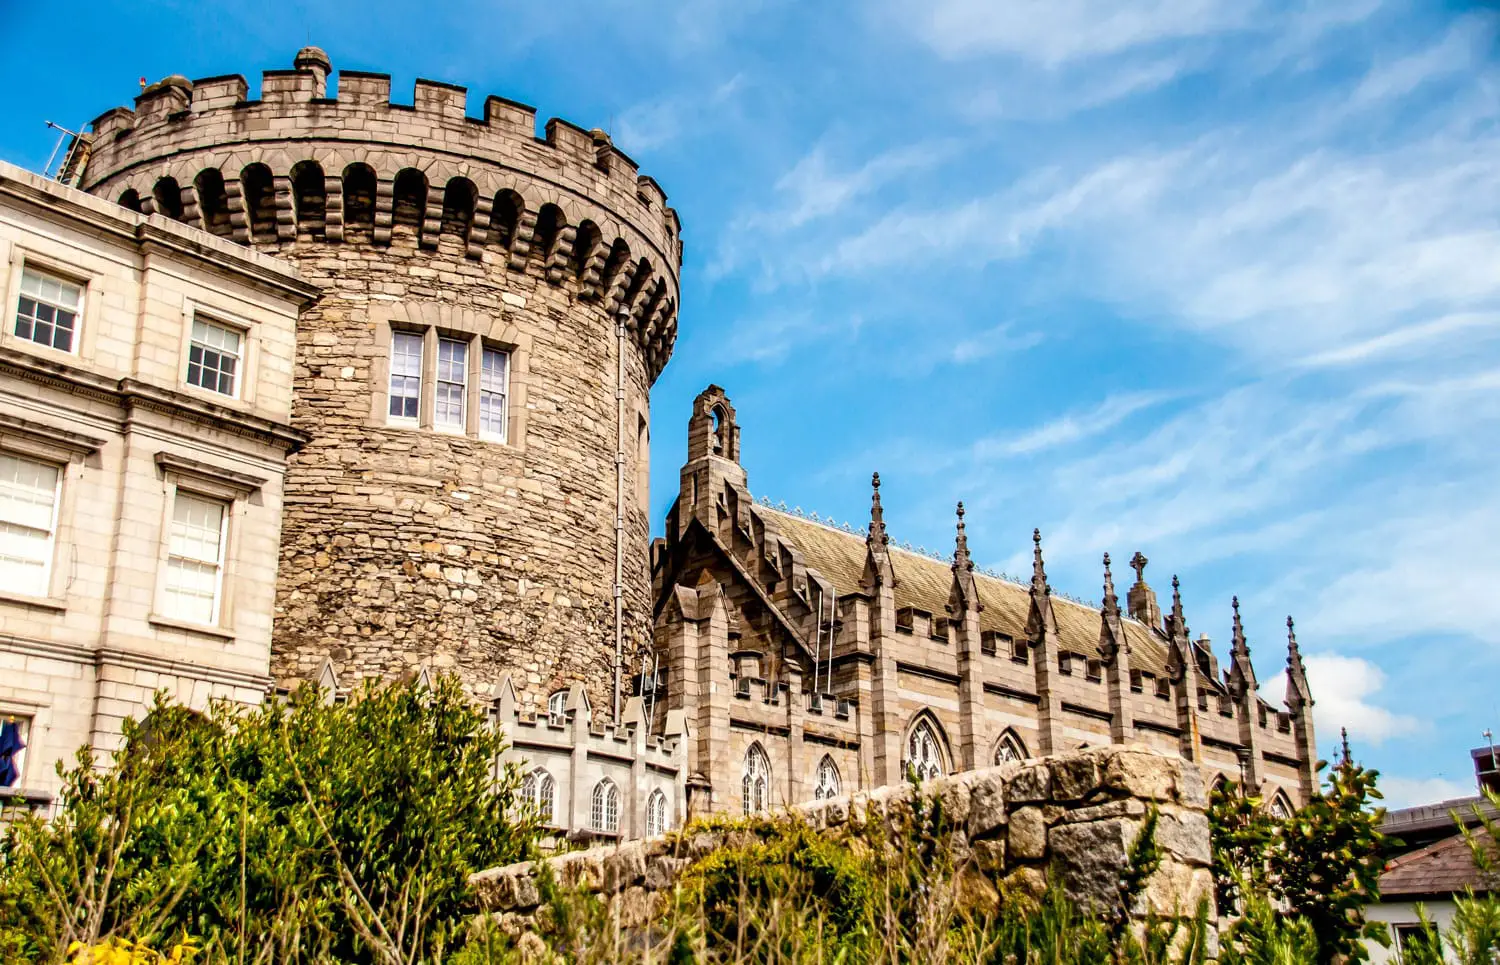 Πανοραμική άποψη ενός ισχυρού πύργου του κάστρου του Δουβλίνου, στο Δουβλίνο, Ιρλανδία